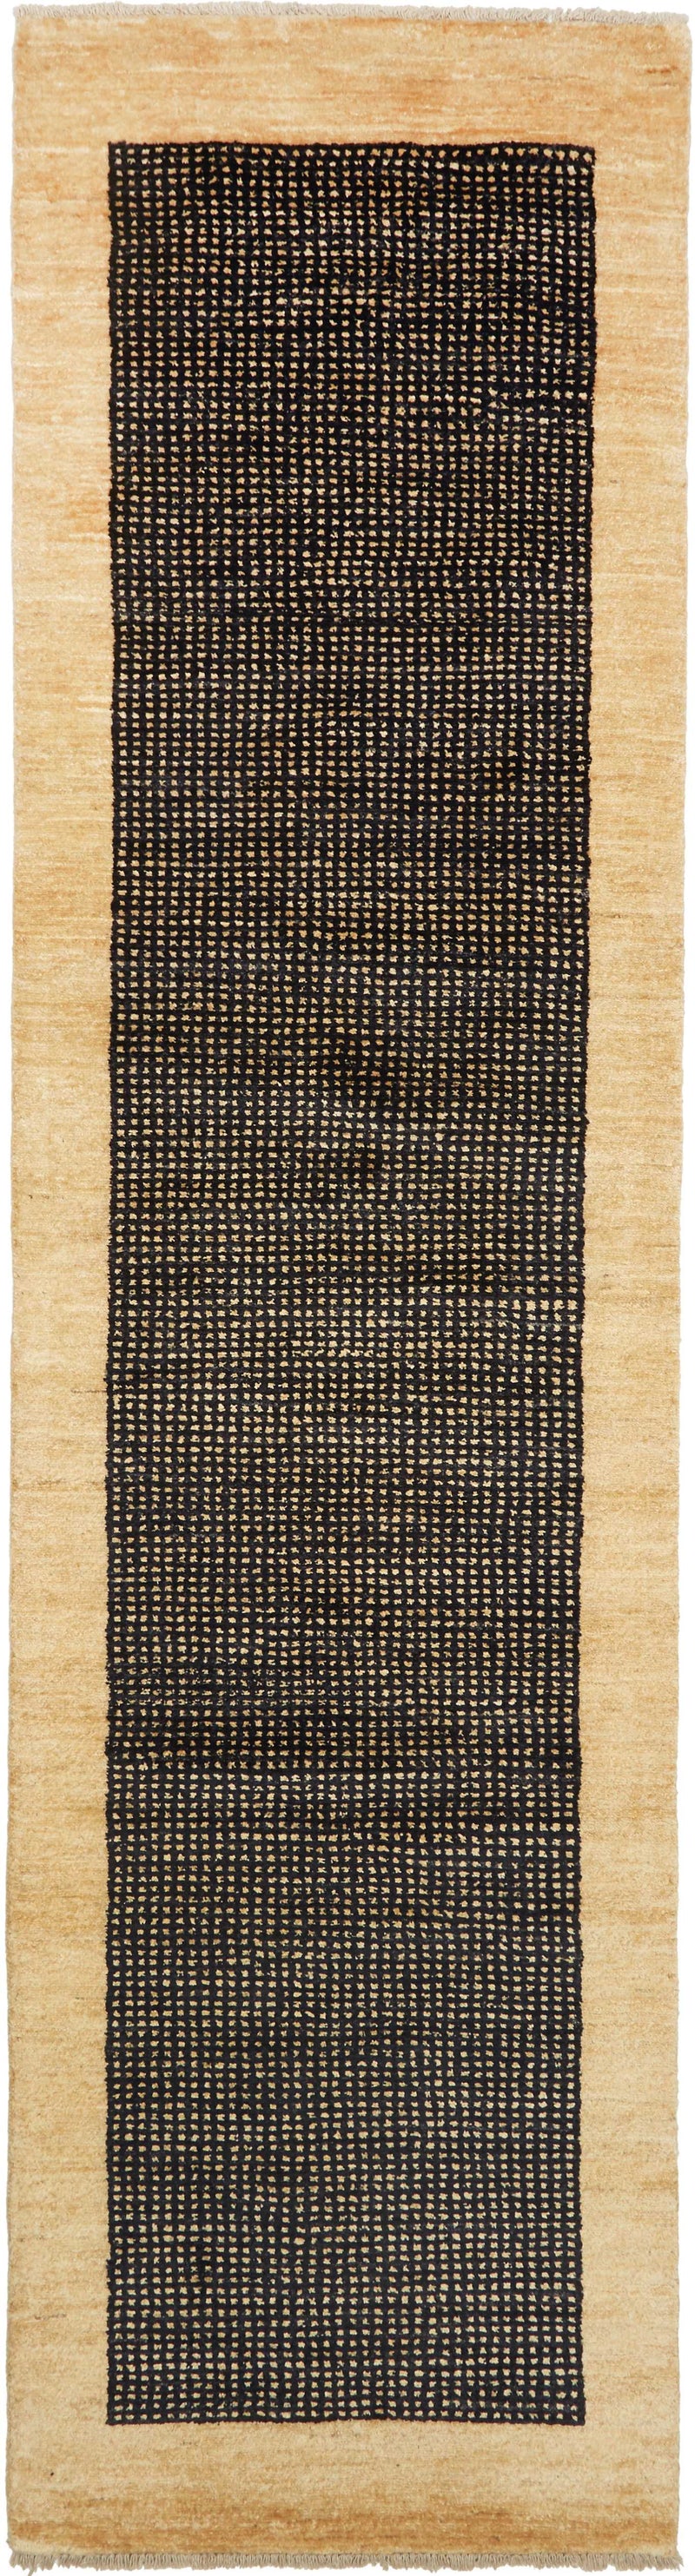 Lori | 246 cm x 78 cm | Nr. Z-2387 – Zomorrodi Teppiche